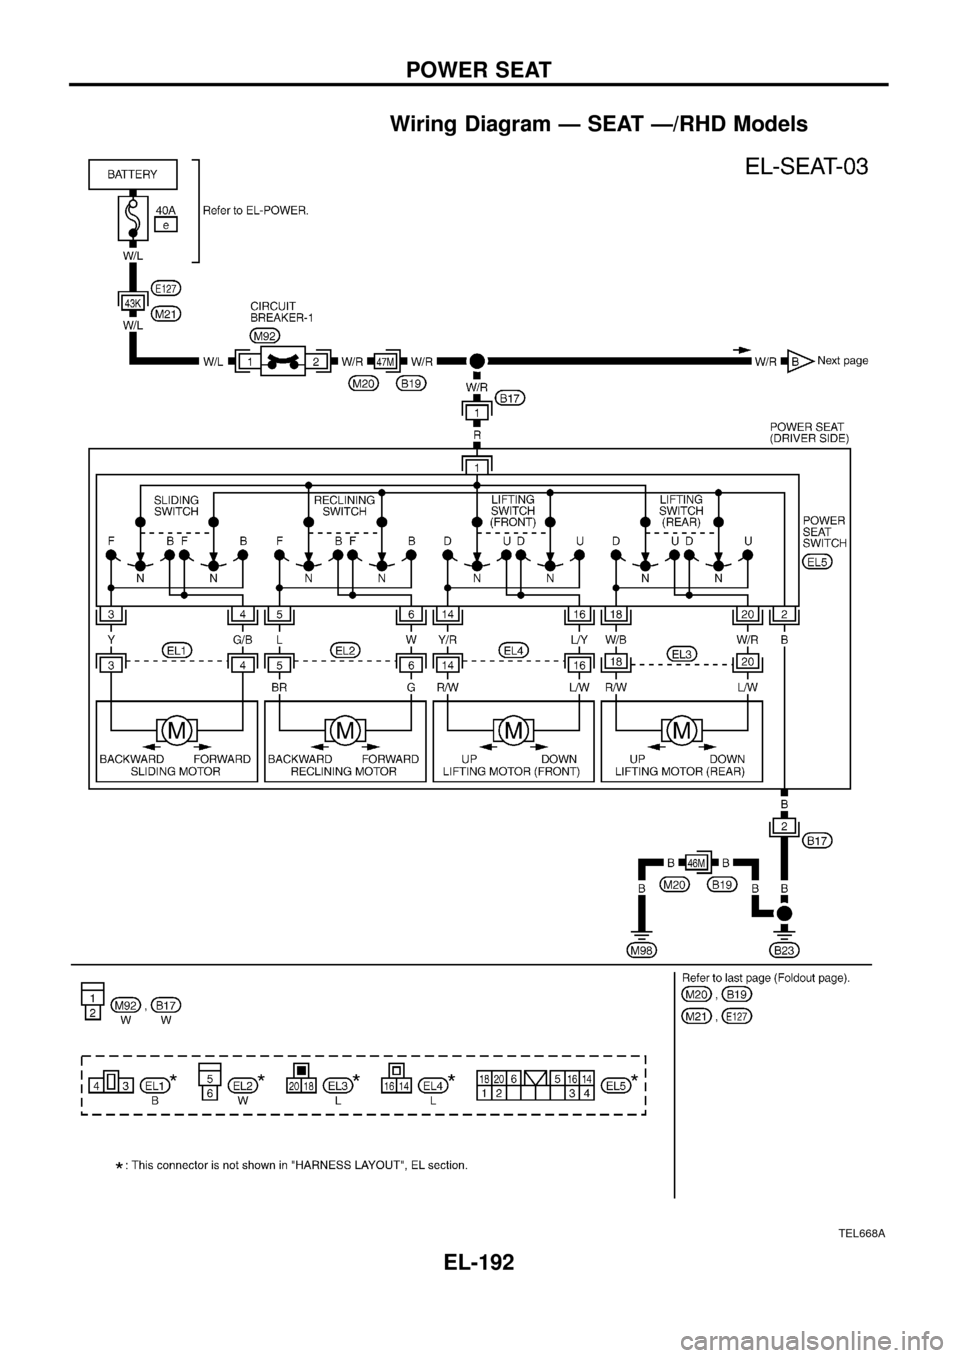 NISSAN PATROL 1998 Y61 / 5.G Electrical System Workshop Manual Wiring Diagram Ð SEAT Ð/RHD Models
TEL668A
POWER SEAT
EL-192 